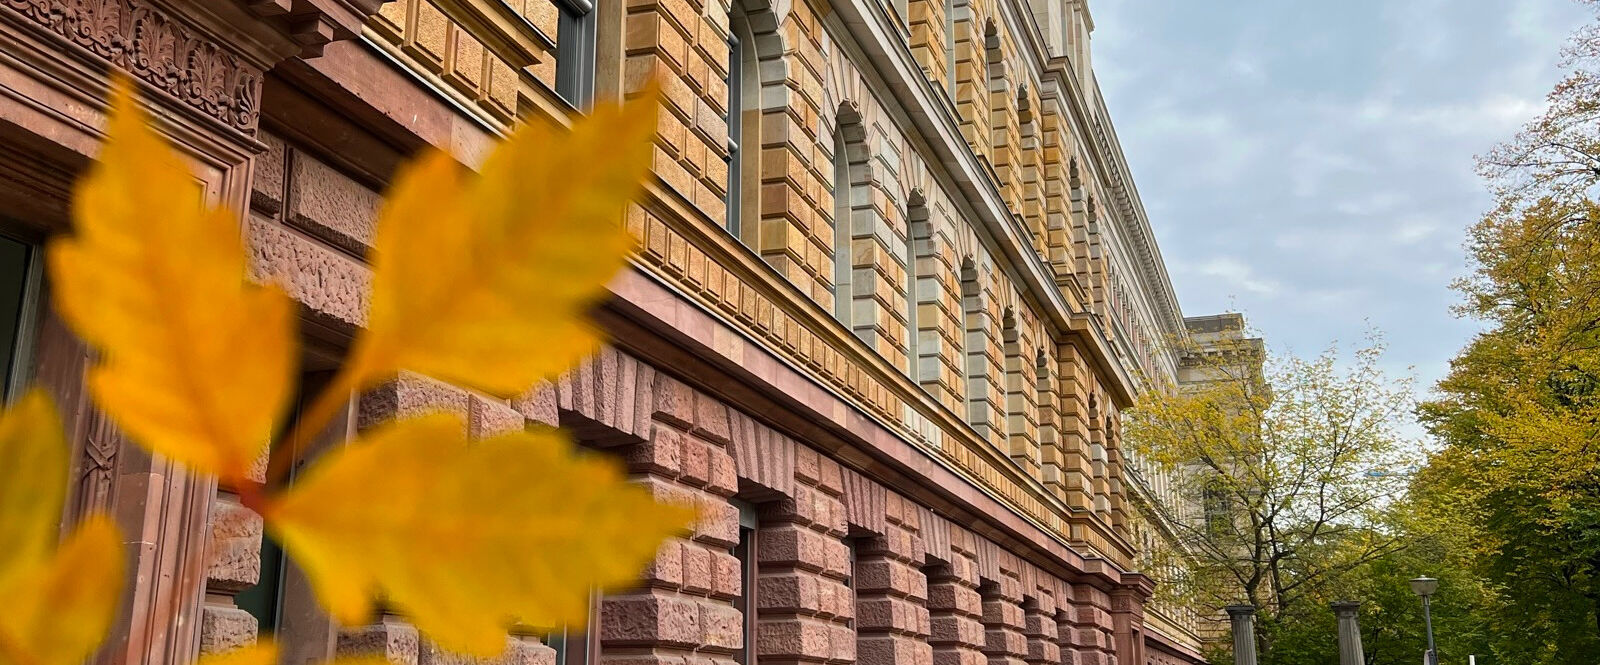 Südseite des Hauptgebäudes der TU Berlin und ein gelber Baumblatt